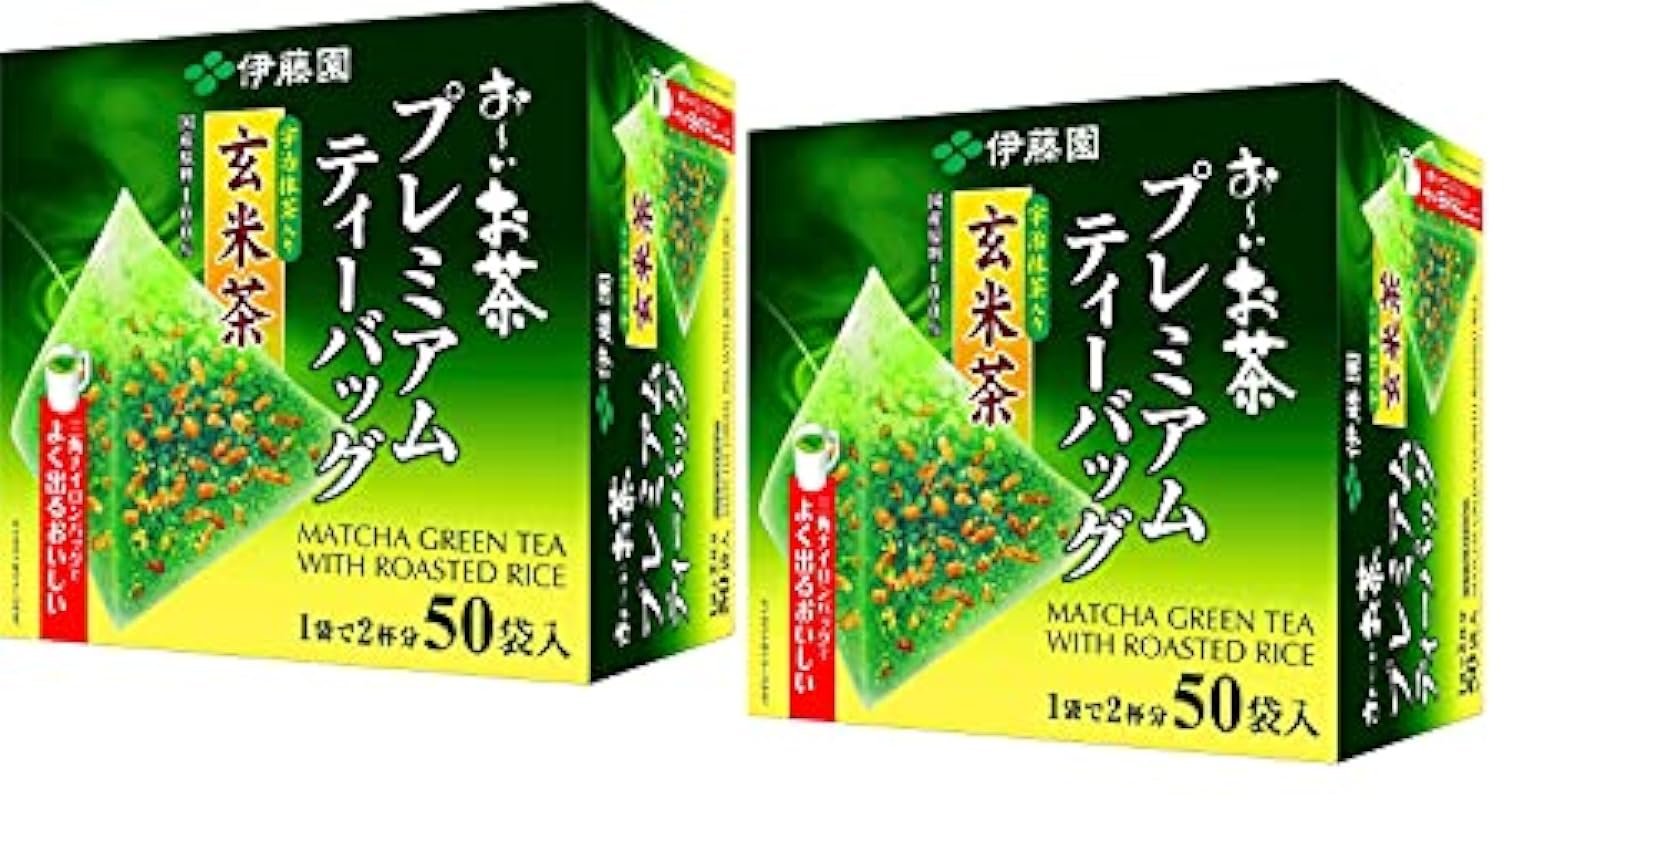 Itoen O～i Ocha Premium Matcha Green Tea with Roasted Rice, Thé Vert Japonais Genmaicha au Matcha Uji et Riz Grillé, Sachets de Thé 1.8g, Pack de 2 Boites (Total 100 Sachets), Fabriqué au Japon LhOUotwV